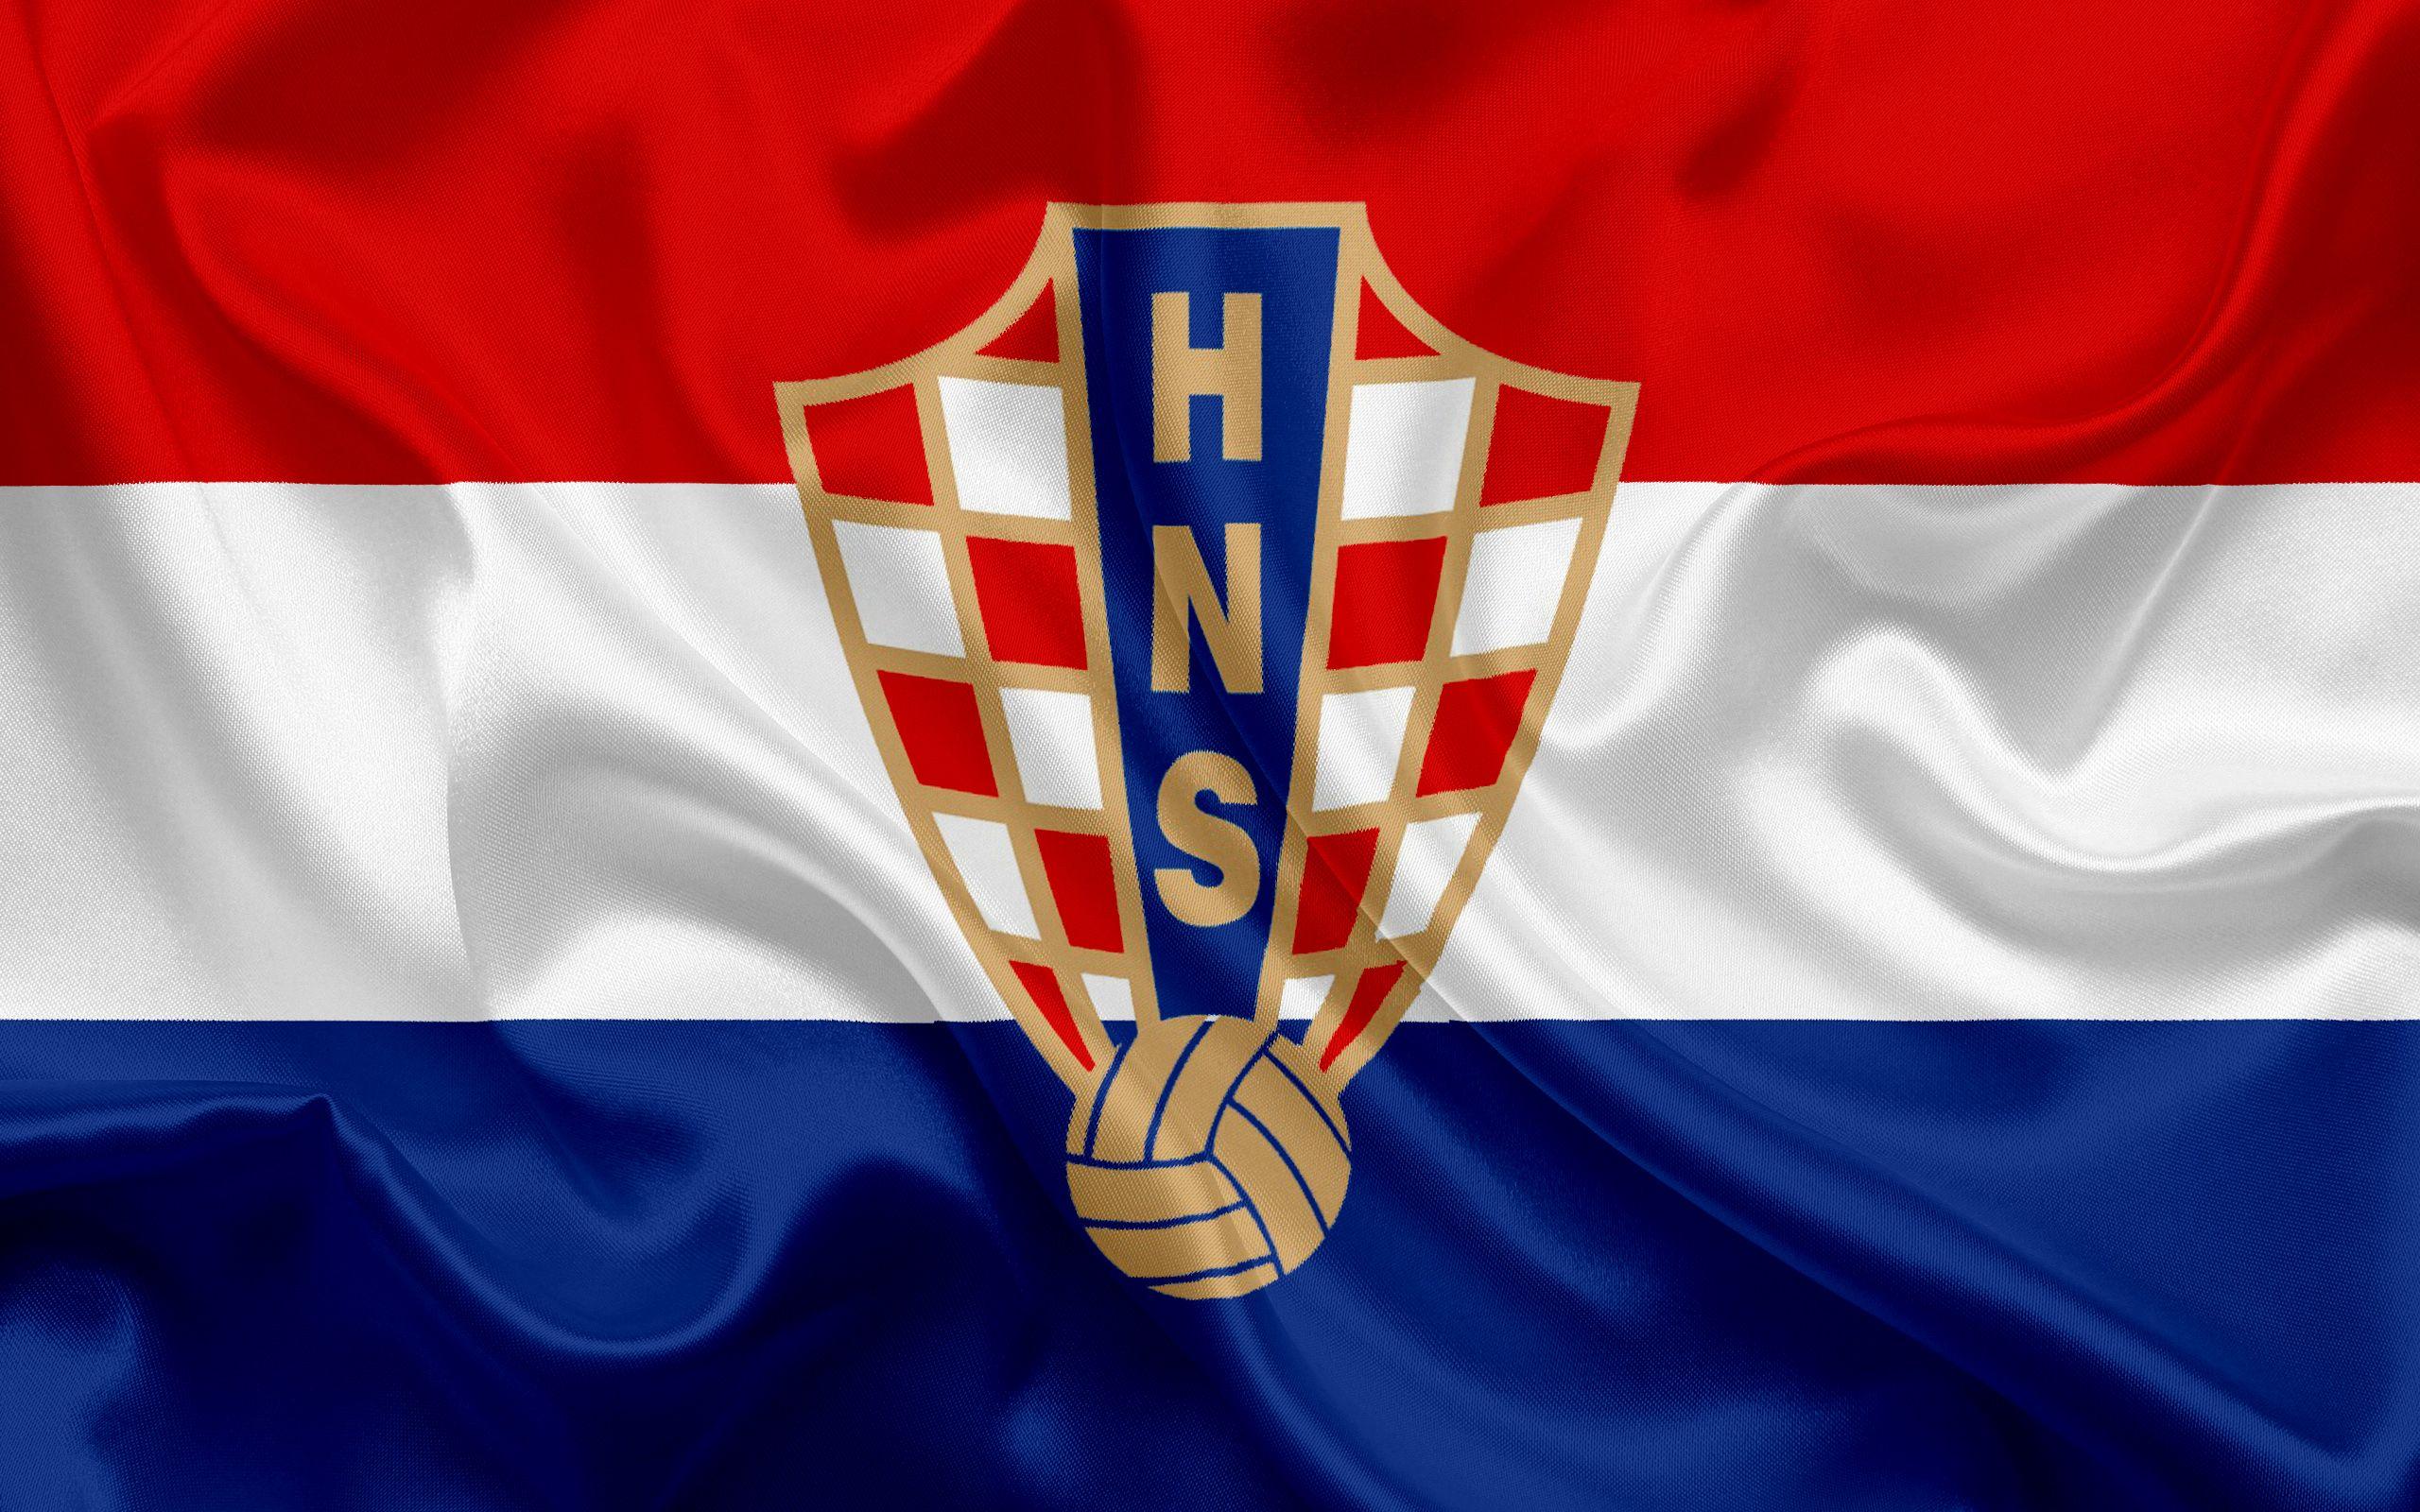 Croatia Logo - 5049089 Croatia, Soccer, Emblem, Logo wallpaper and background ...